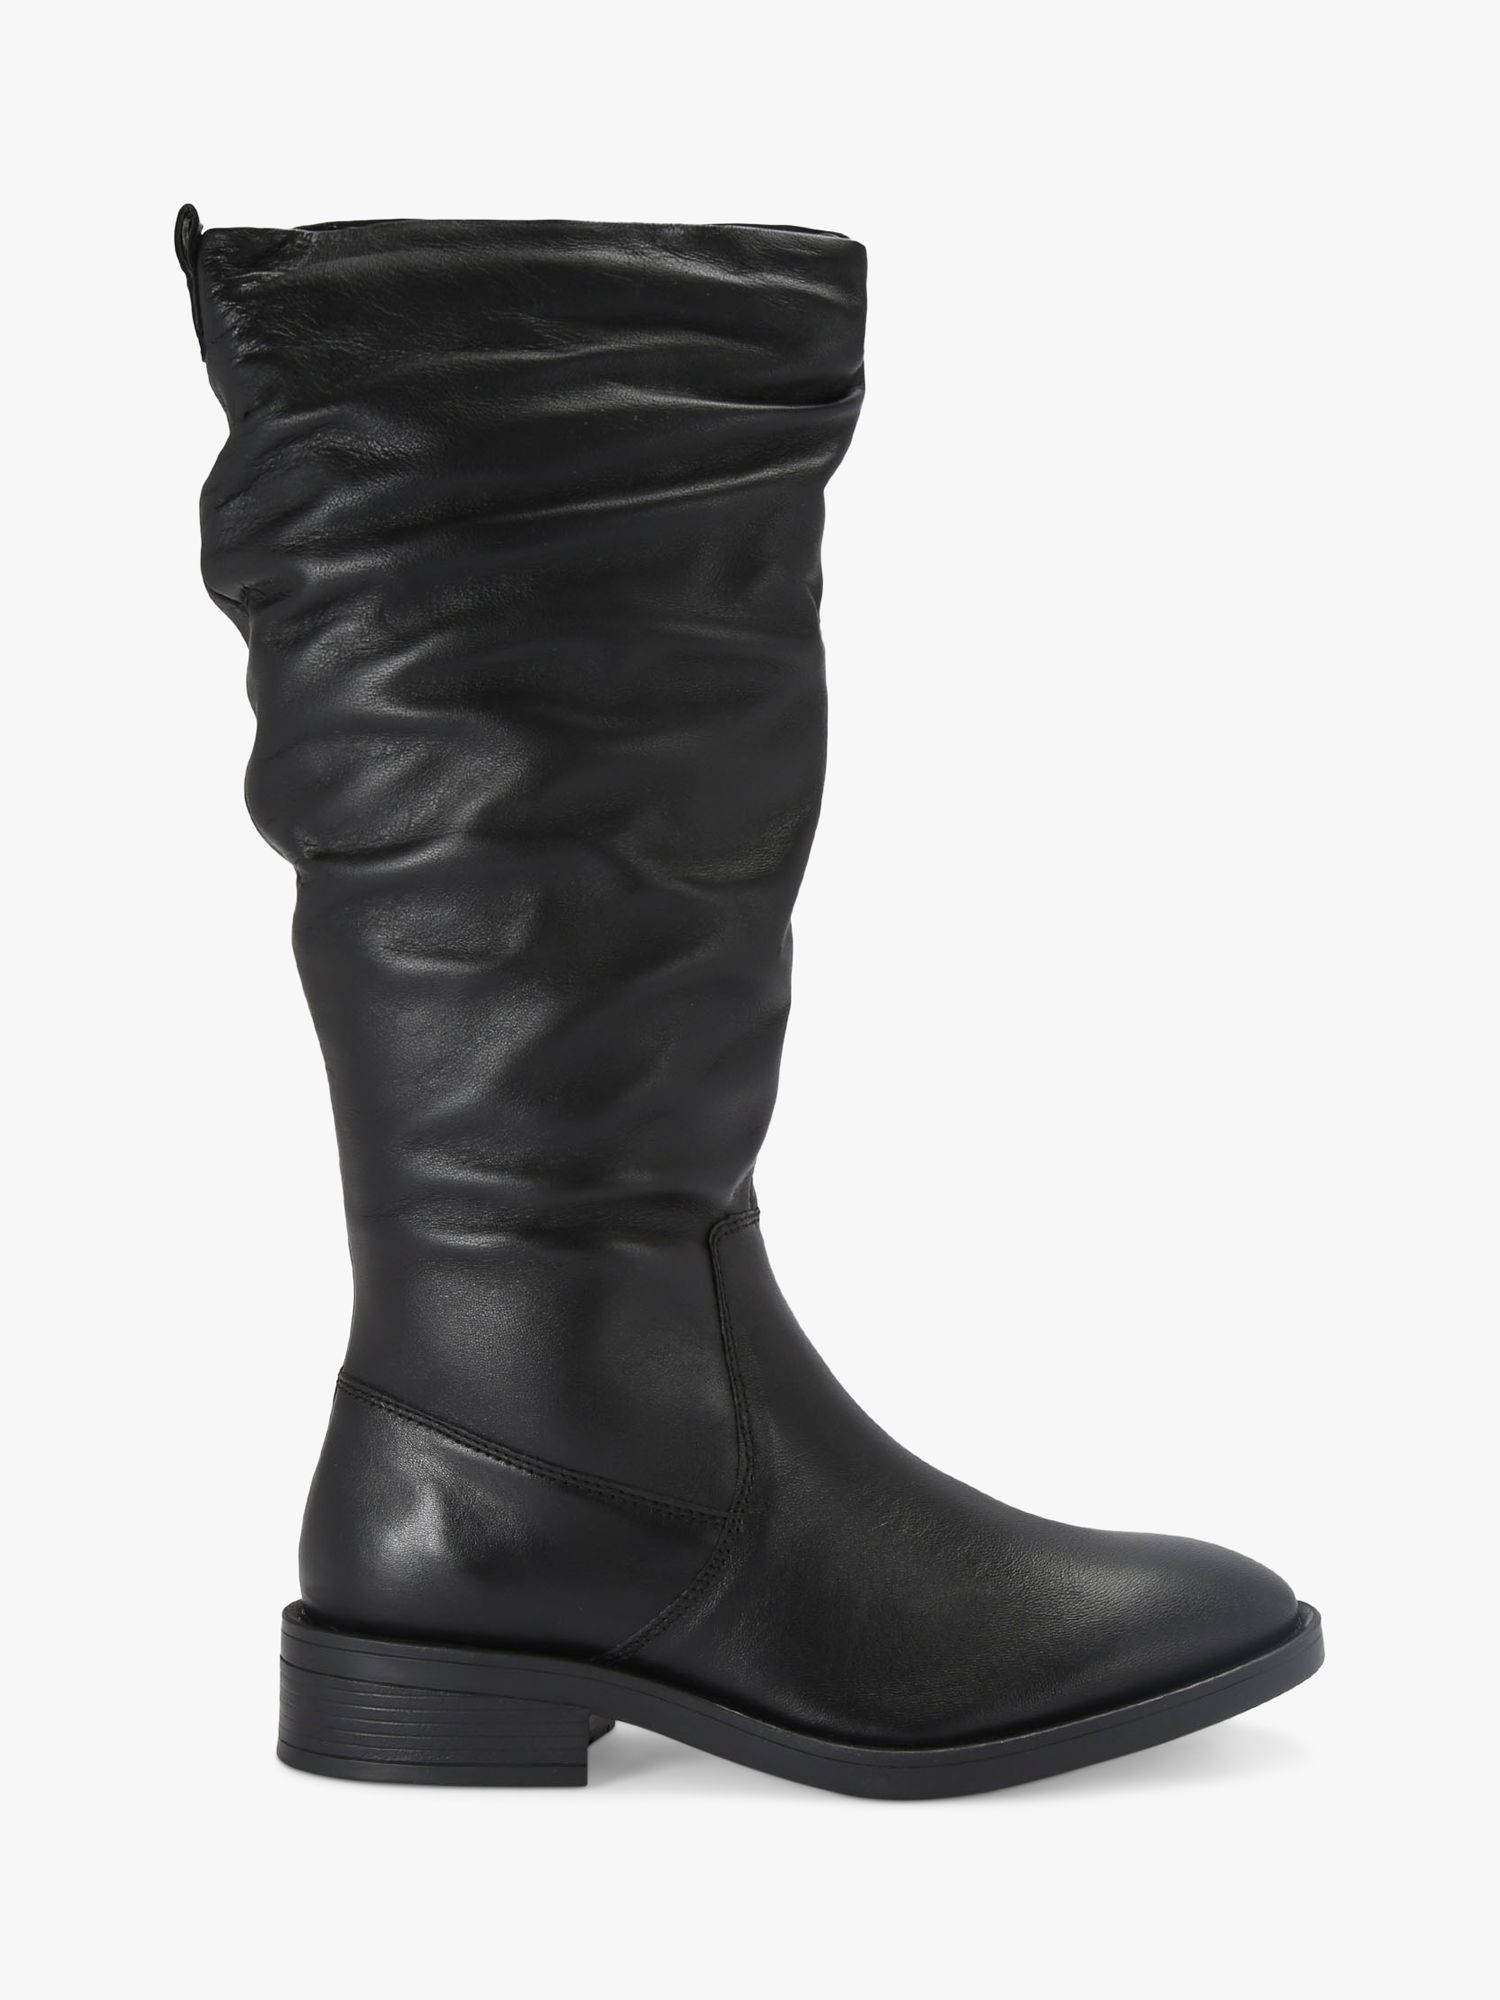 Carvela Parlour Leather Calf Boots, Black, 3